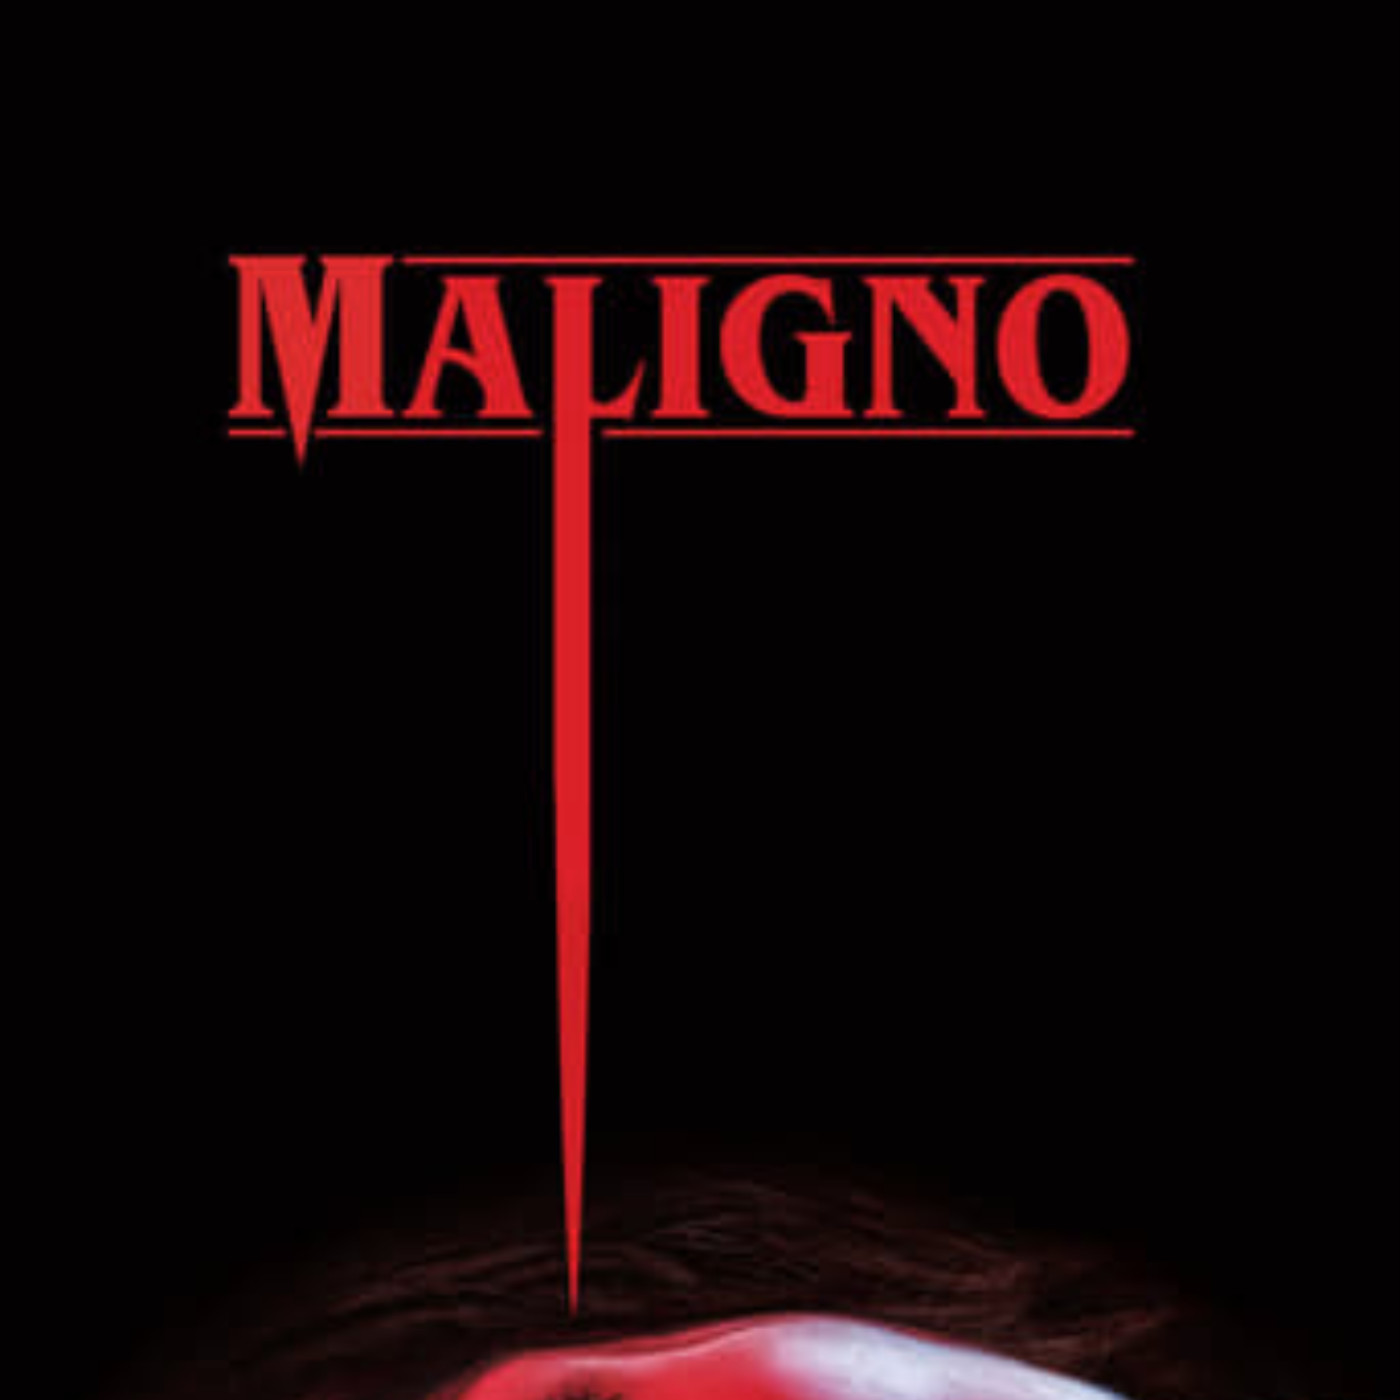 Ver Maligno 2021 online gratis en español y latino | Podcast on SoundOn